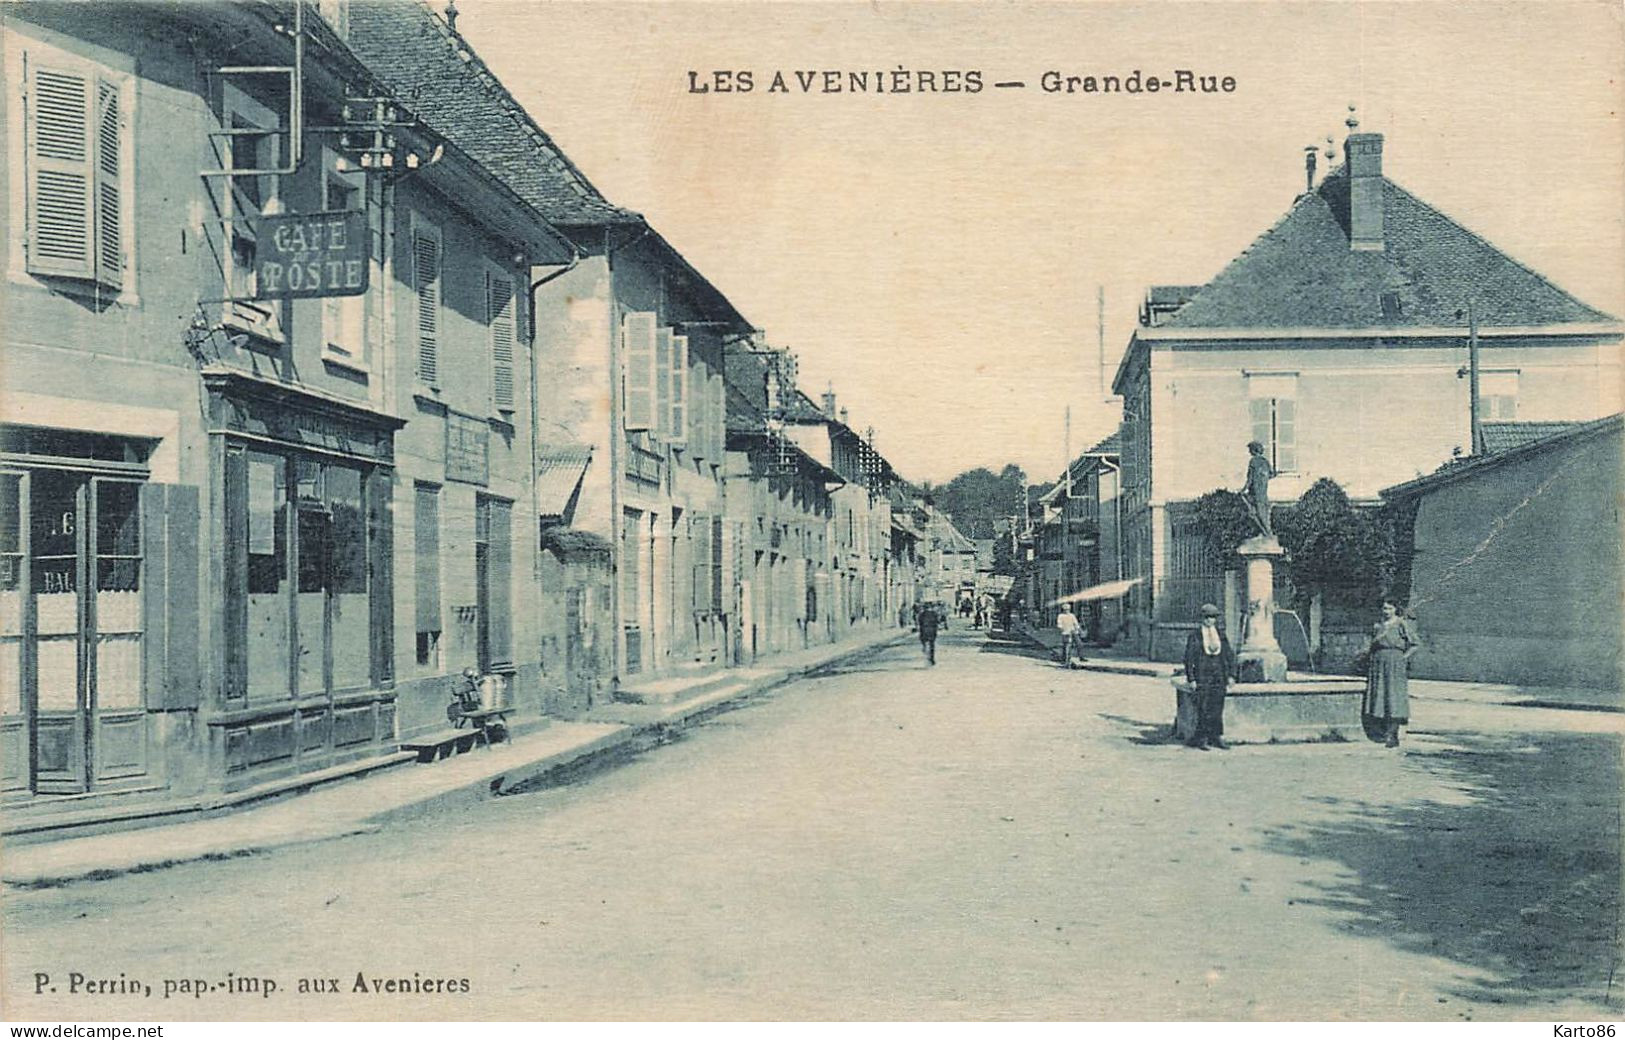 Les Avenières * Grande Rue * Café Poste * Villageois - Les Avenières